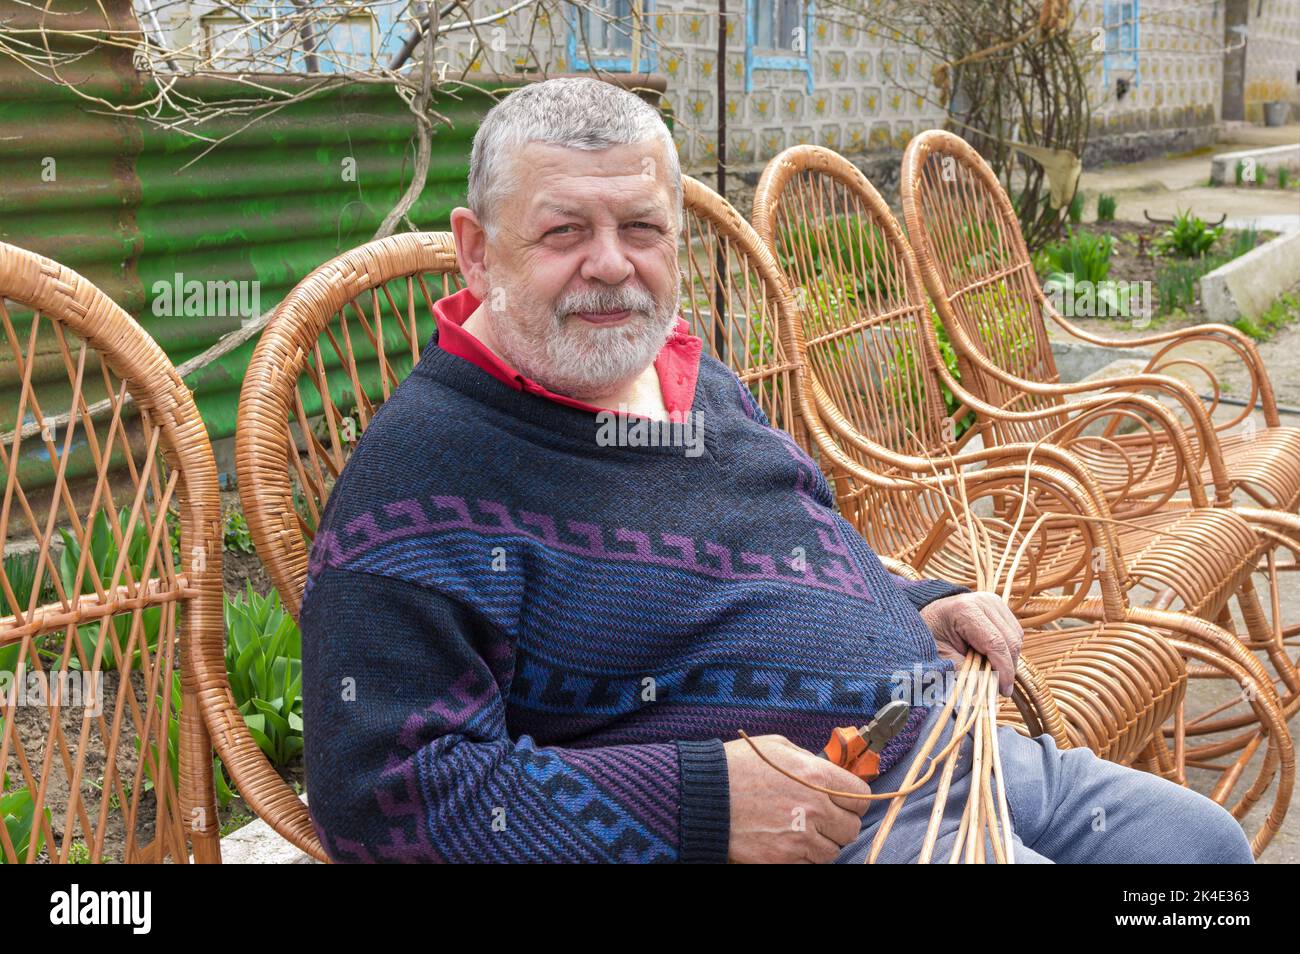 Schönes Porträt eines ukrainischen Mannes, der in einem Schaukelstuhl sitzt, den er mit Withe gemacht hat Stockfoto